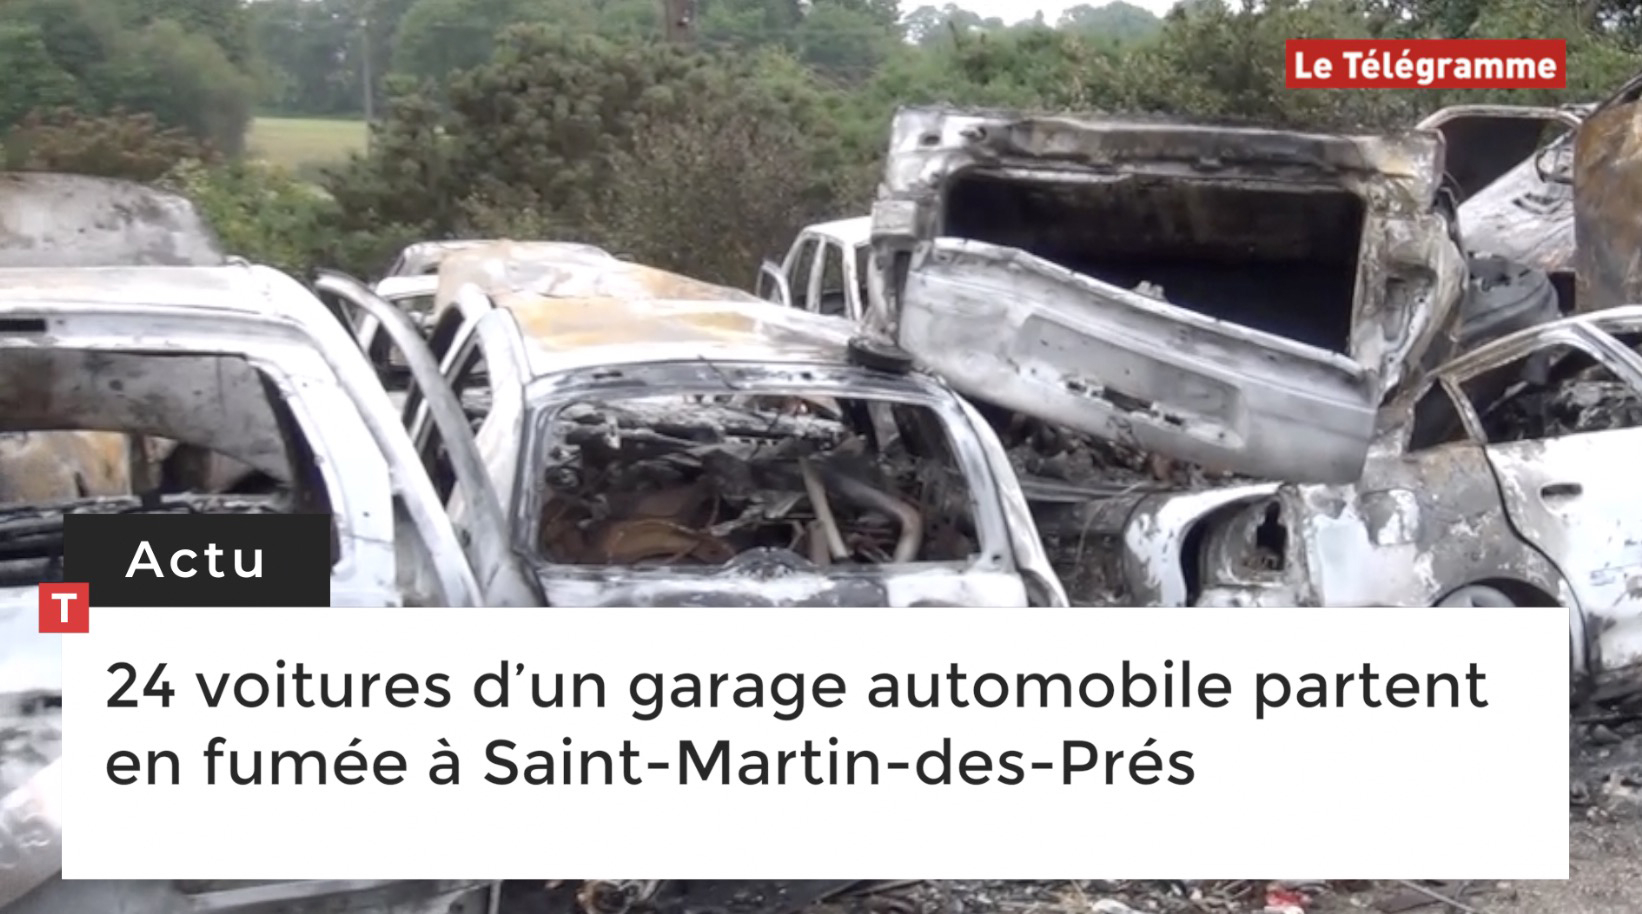 24 voitures d’un garage automobile partent en fumée à Saint-Martin-des-Prés (Le Télégramme)